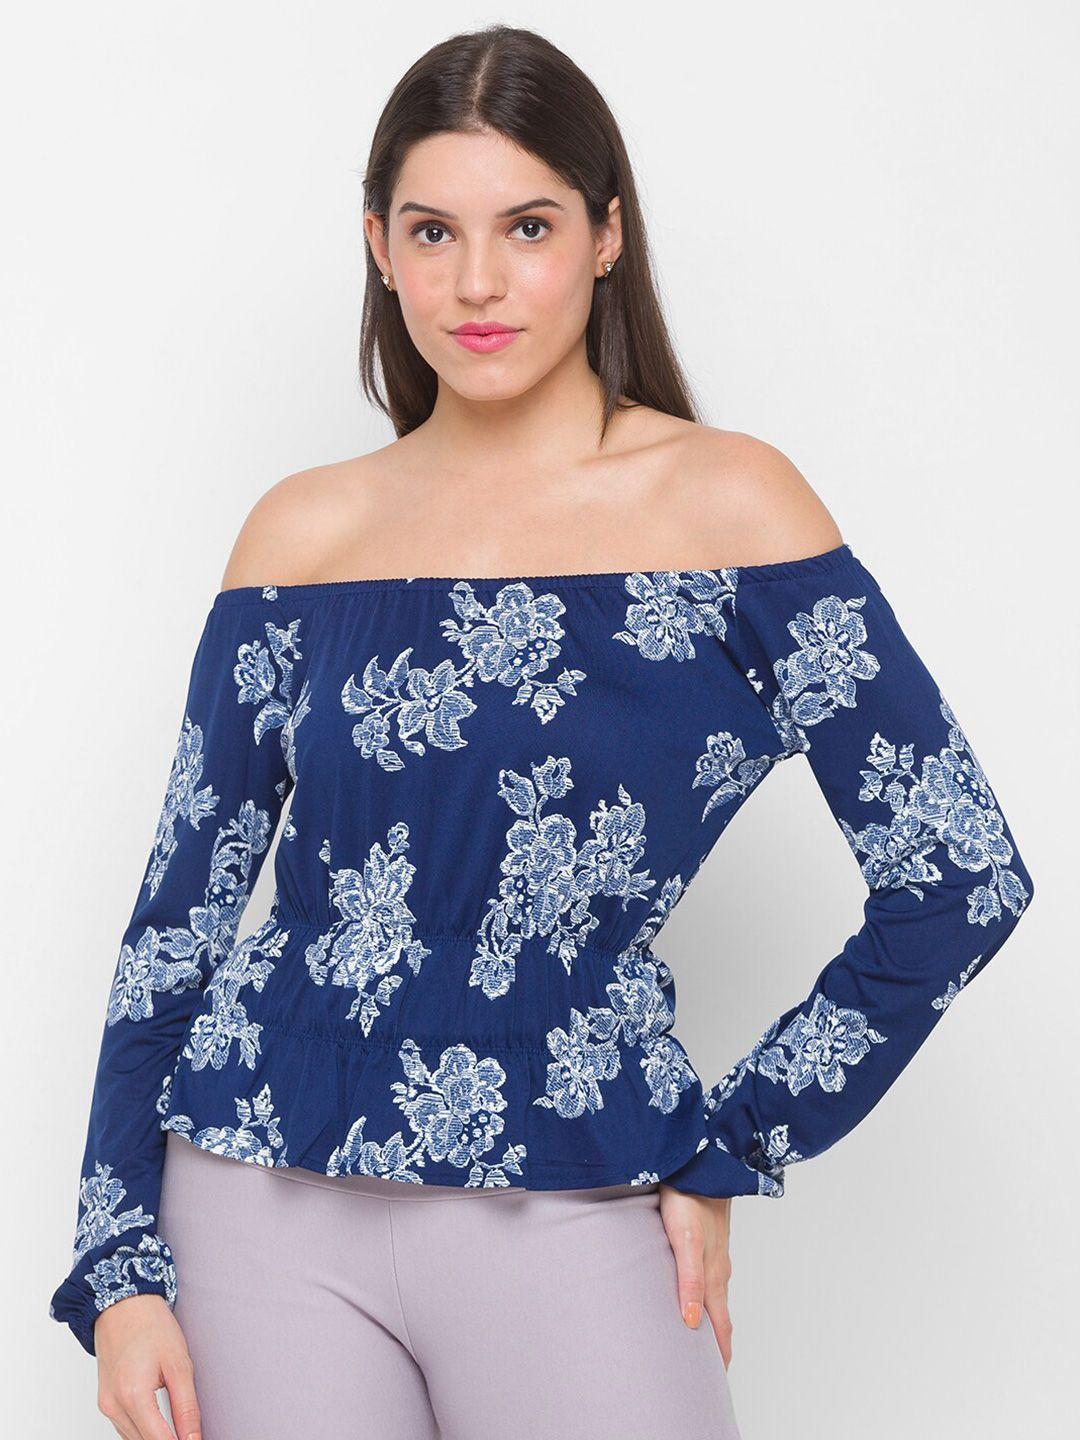 globus navy blue & white floral print off-shoulder bardot top